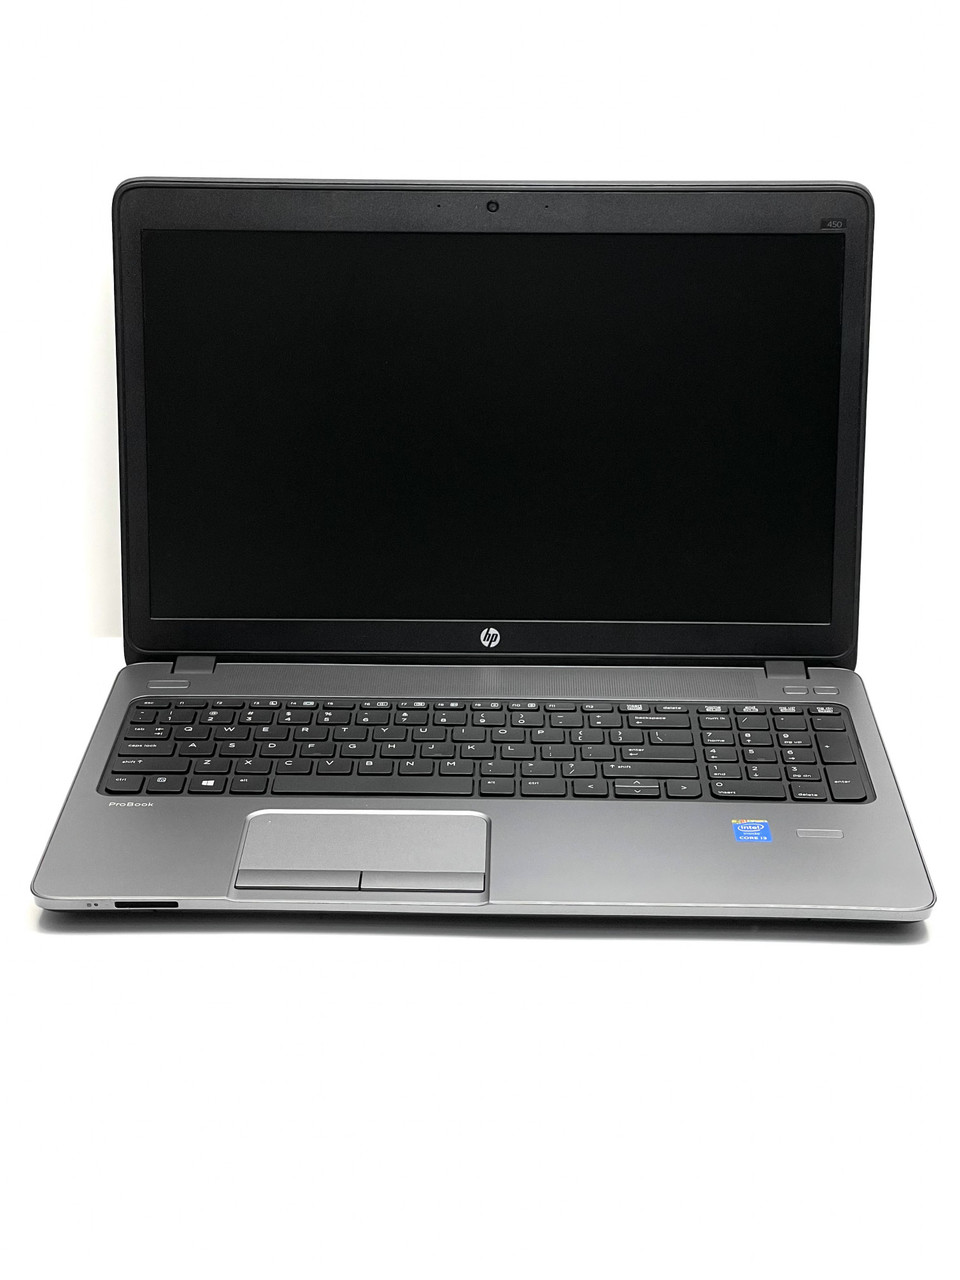 Ноутбук HP ProBook 450 G1 15,6 Intel Core i3 4 Гб 180 Гб Refurbished